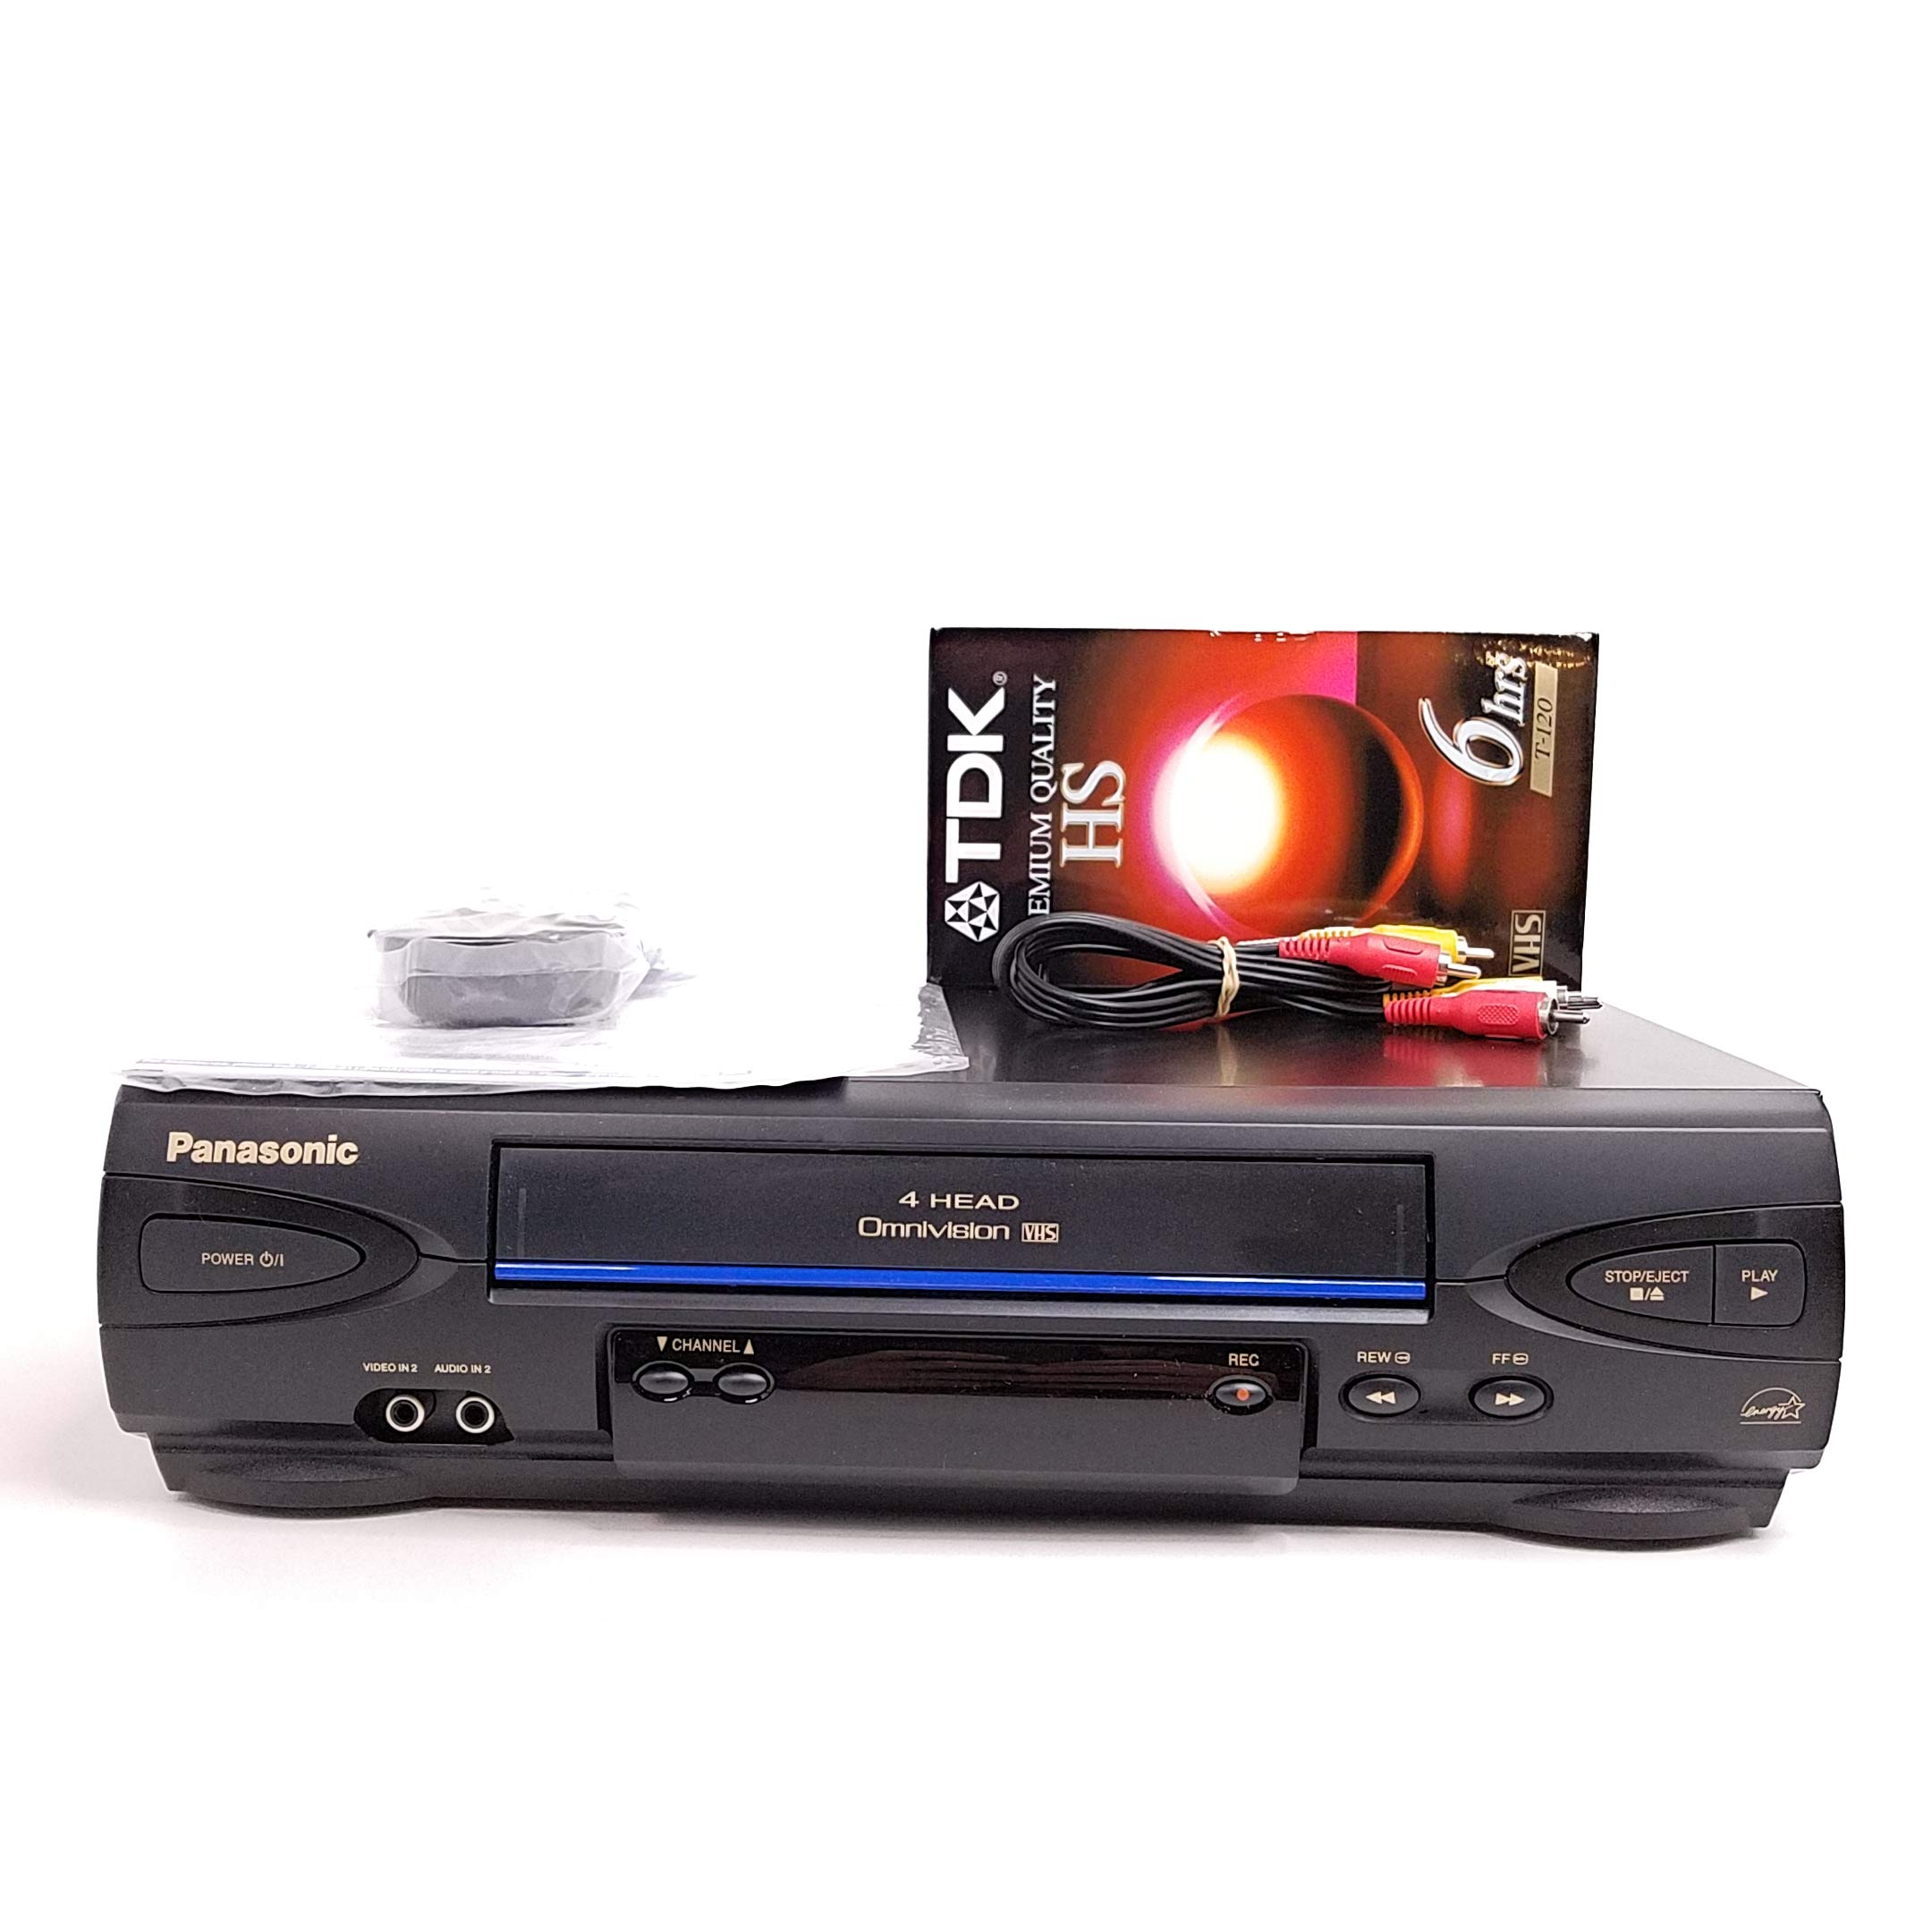 Panasonic VCR VHS player Modelo # PV-V4022